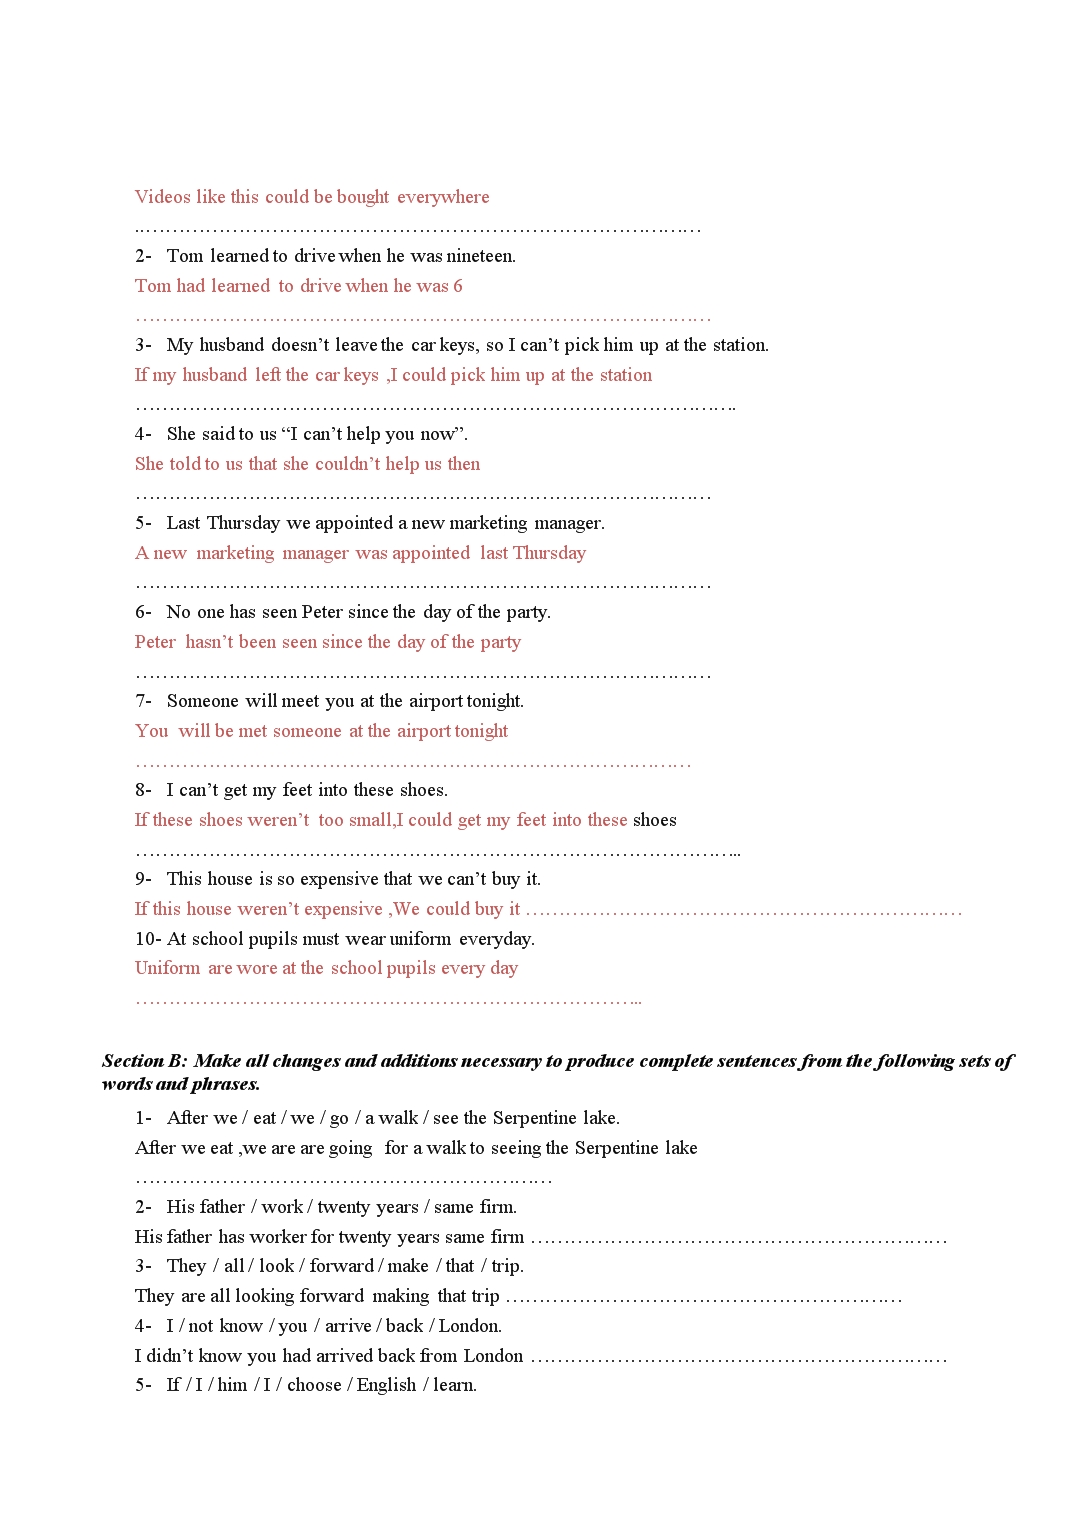 Đề thi môn Tiếng anh – Đề số 4 trang 3